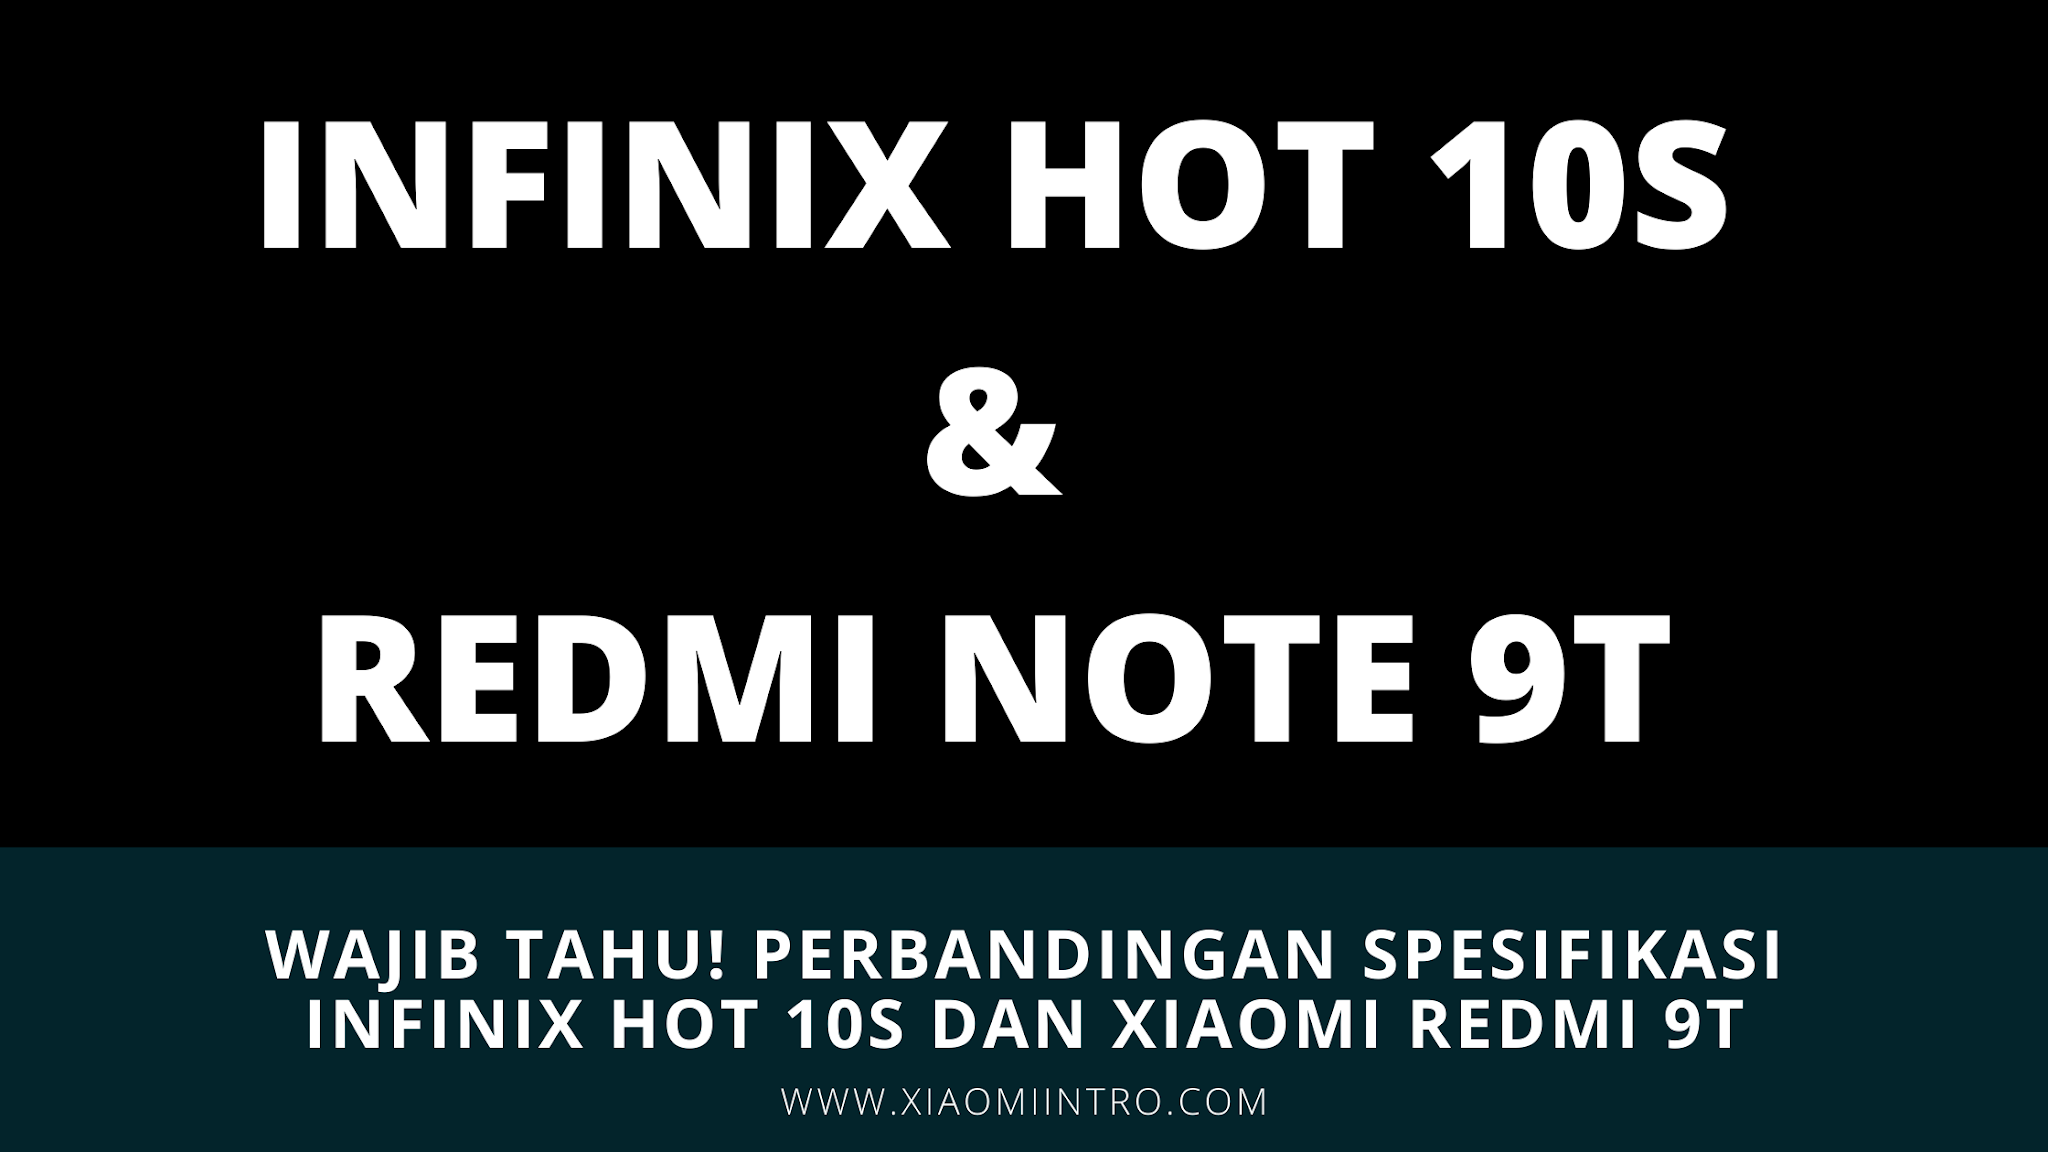 Wajib Tahu! Perbandingan Spesifikasi Infinix Hot 10S Dan Xiaomi Redmi 9T